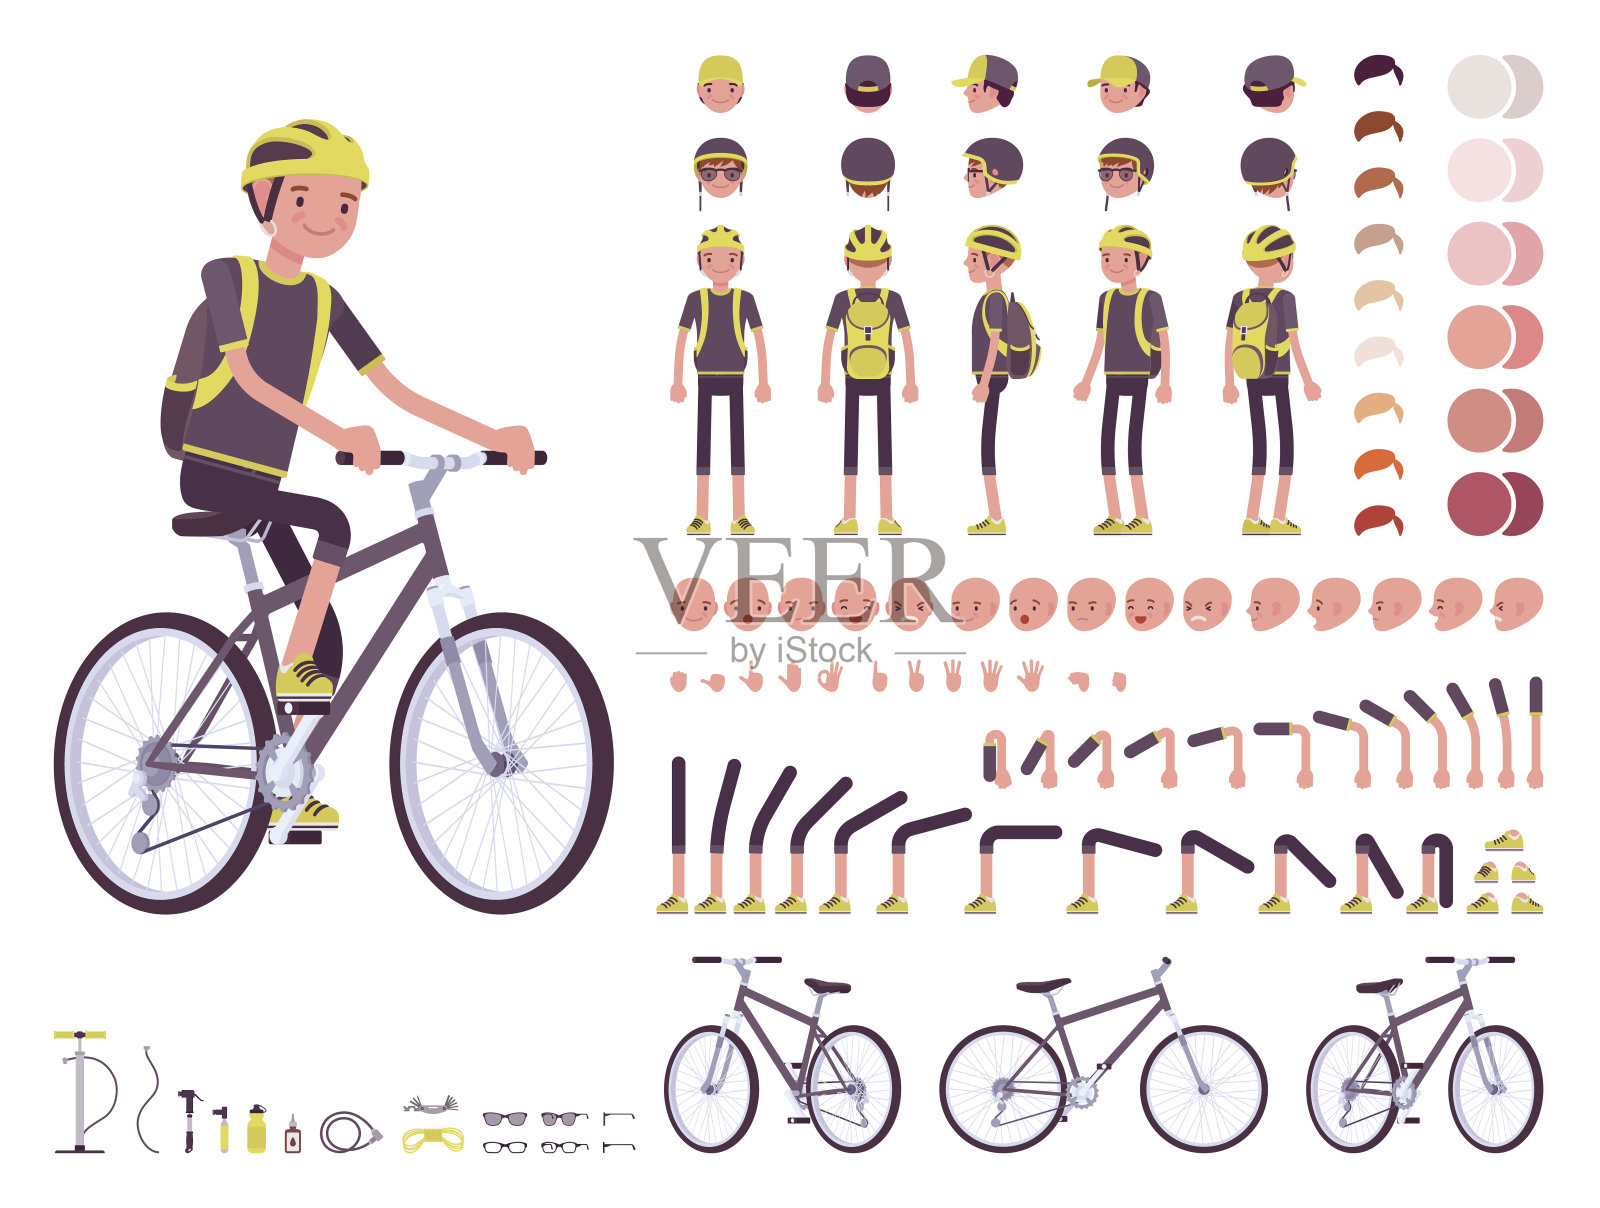 男性自行车手角色创建集插画图片素材